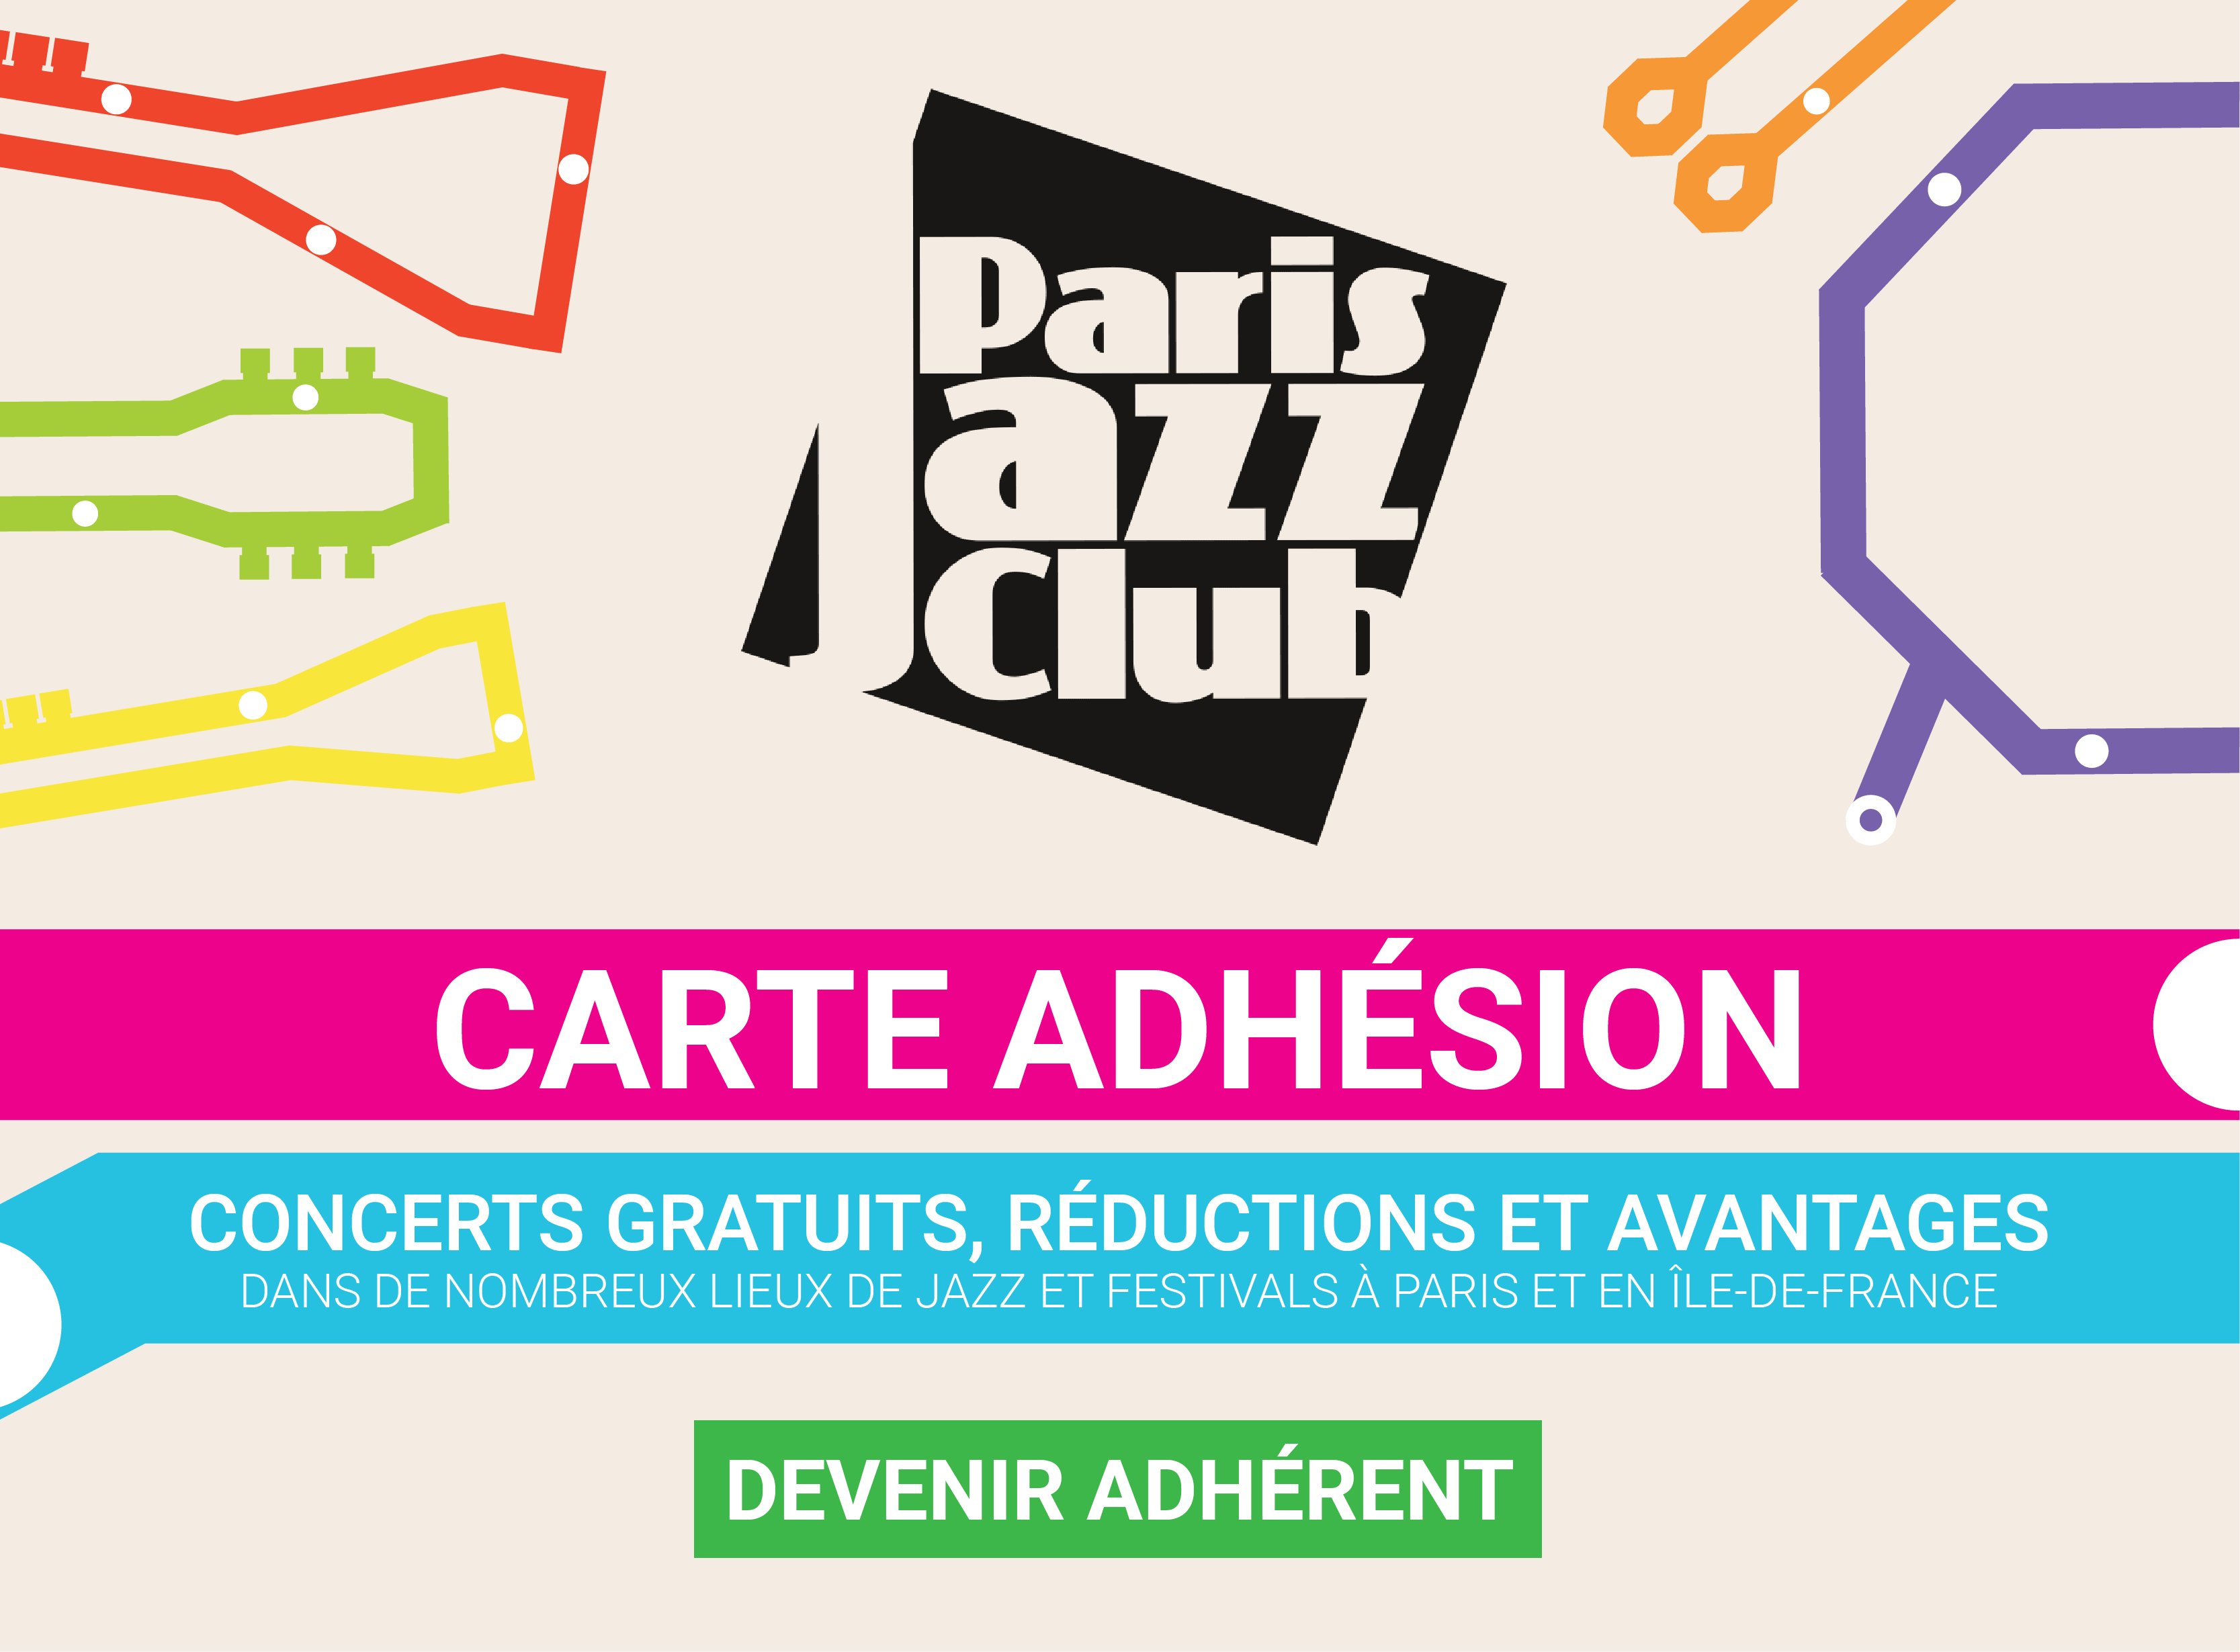 Carte adhésion particulier Paris Jazz Club